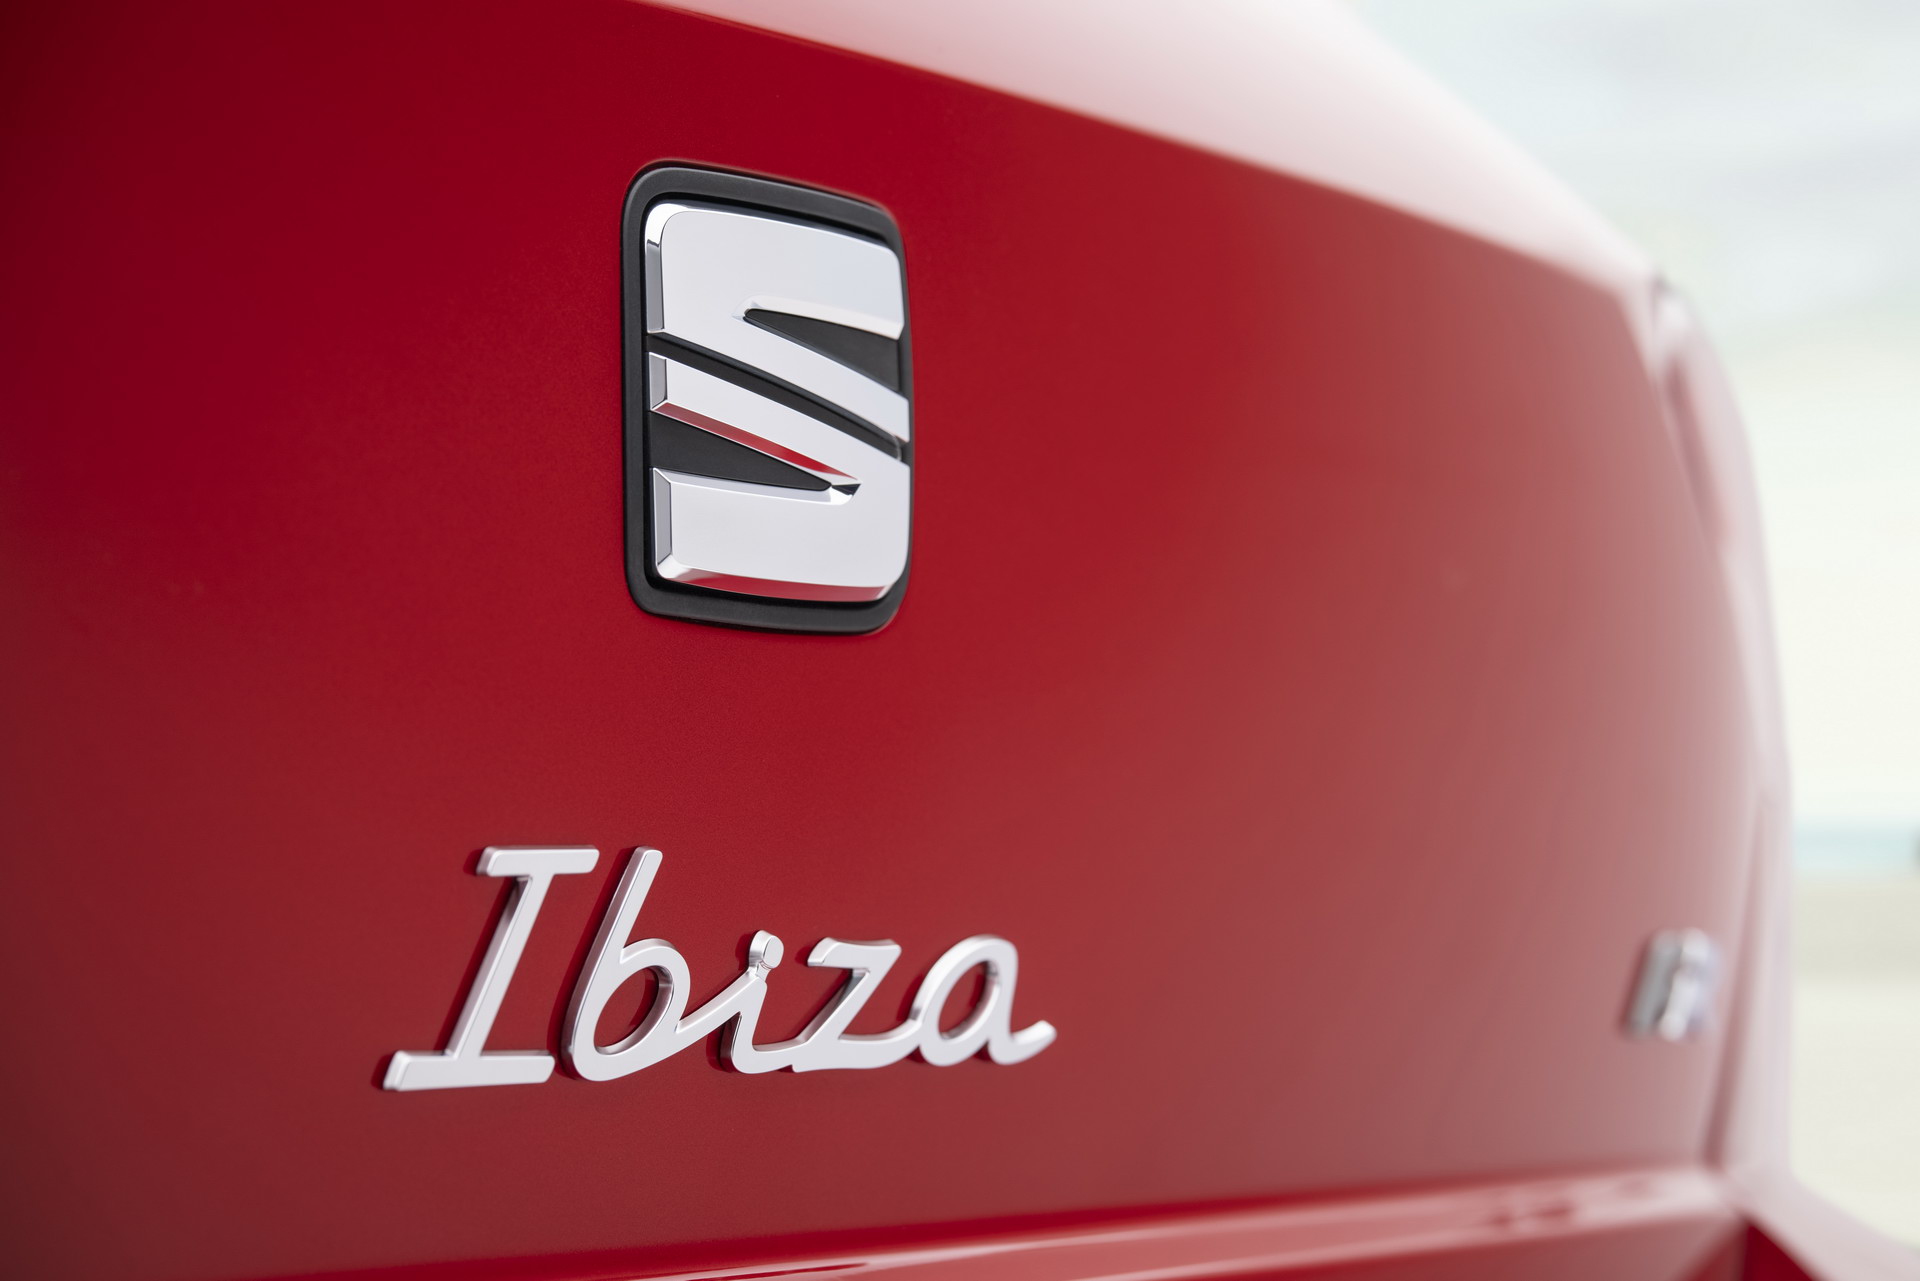 Makyajlı 2021 Seat Ibiza tanıtıldı: İşte tasarımı ve özellikleri